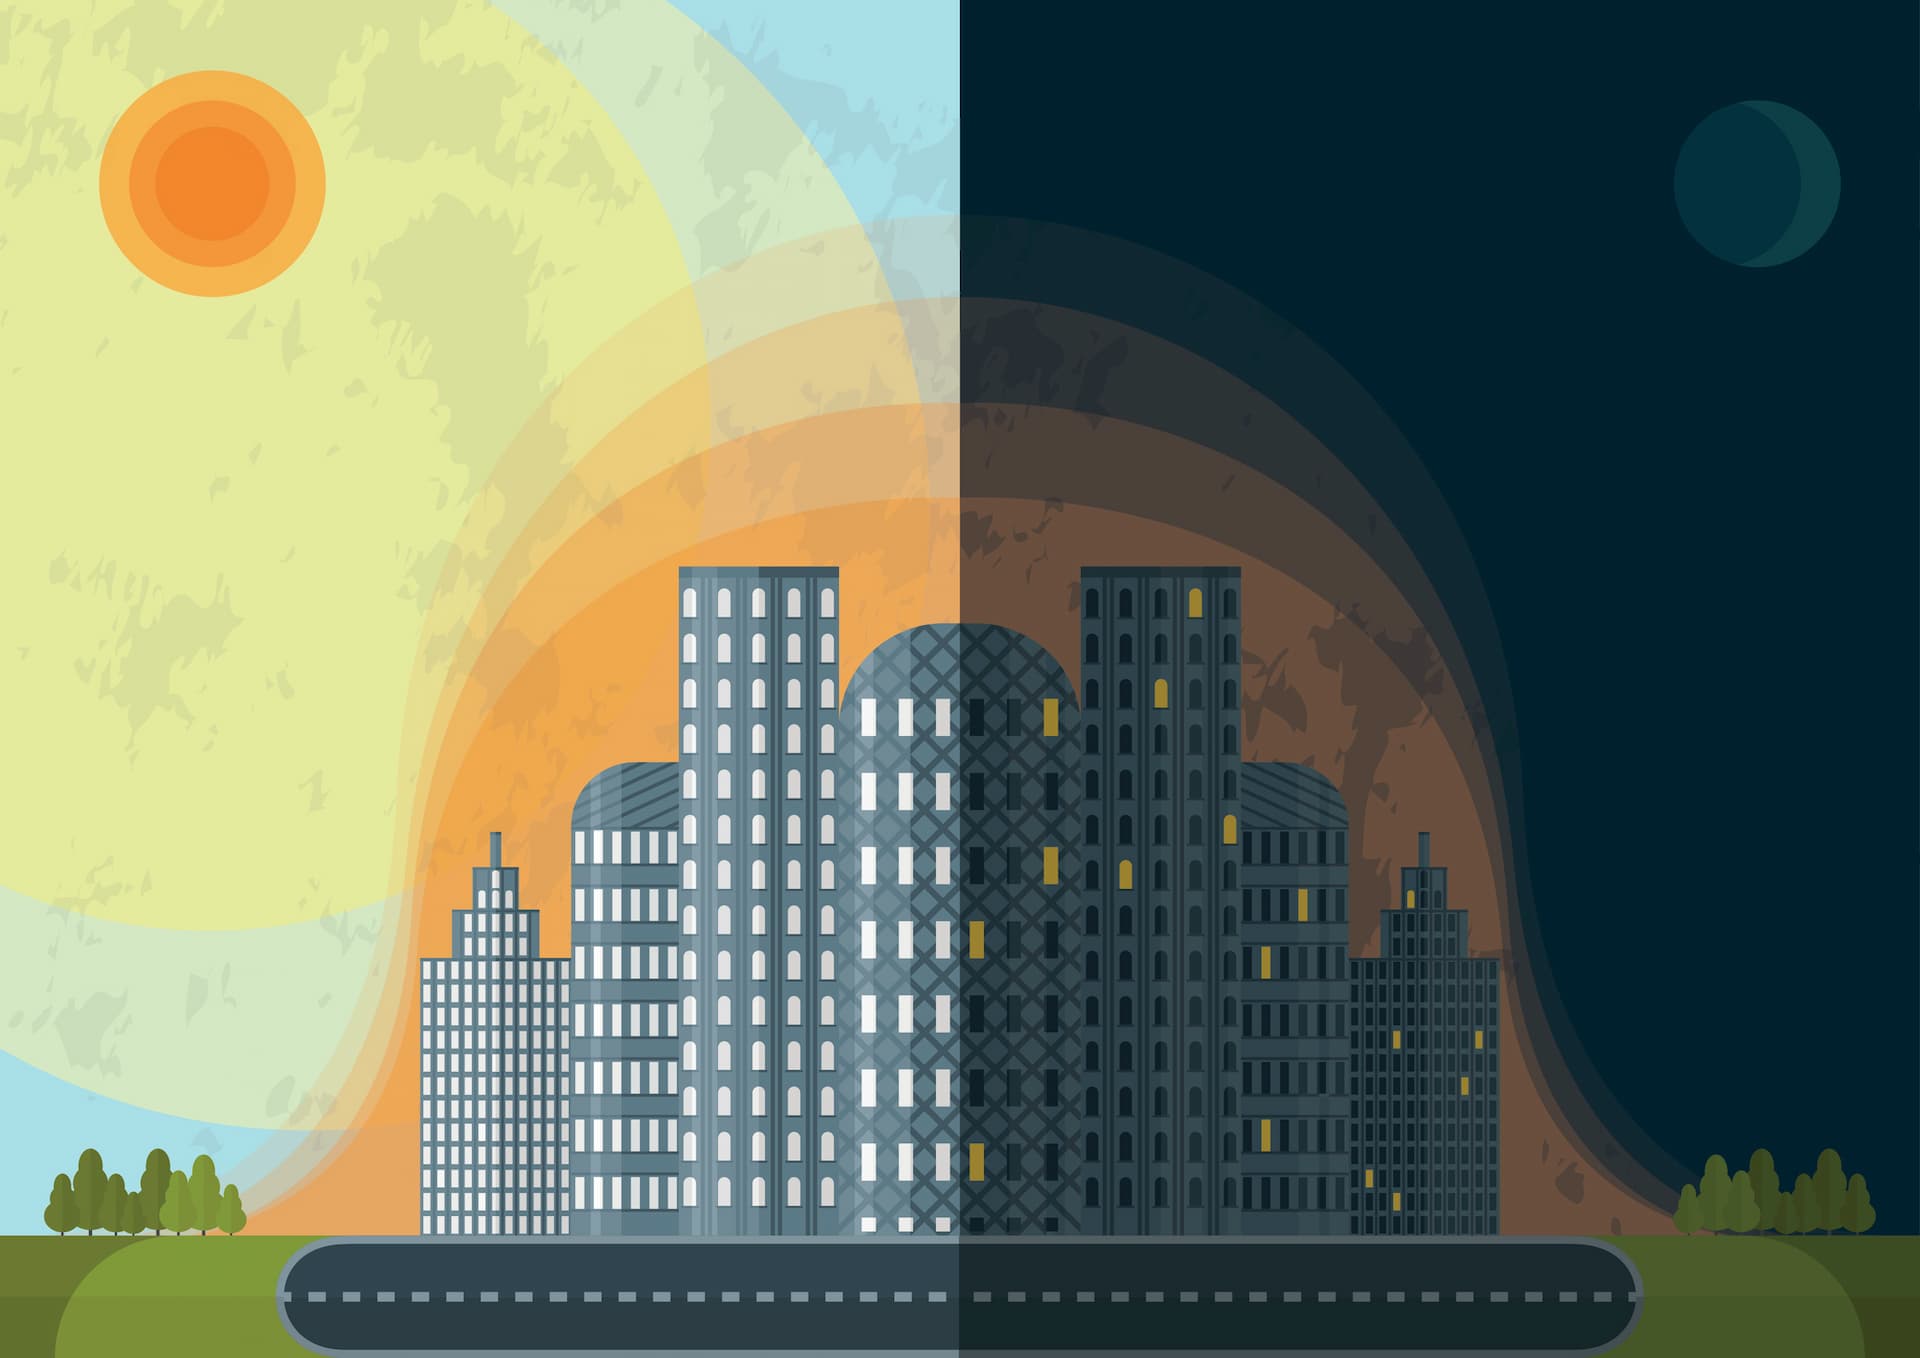 शहरी ताप द्वीप का एक ग्राफिक प्रतिनिधित्व: दिन के दौरान इमारतें और पक्के क्षेत्र सौर विकिरण को अवशोषित करते हैं, जिसकी गर्मी फिर रात में निकलती है। परिणाम? शहरी क्षेत्र ग्रामीण या परिधीय क्षेत्रों की तुलना में लगातार गर्म होते हैं (छवि: वेलेंटीना क्रुचिनिना / आईस्टॉक)